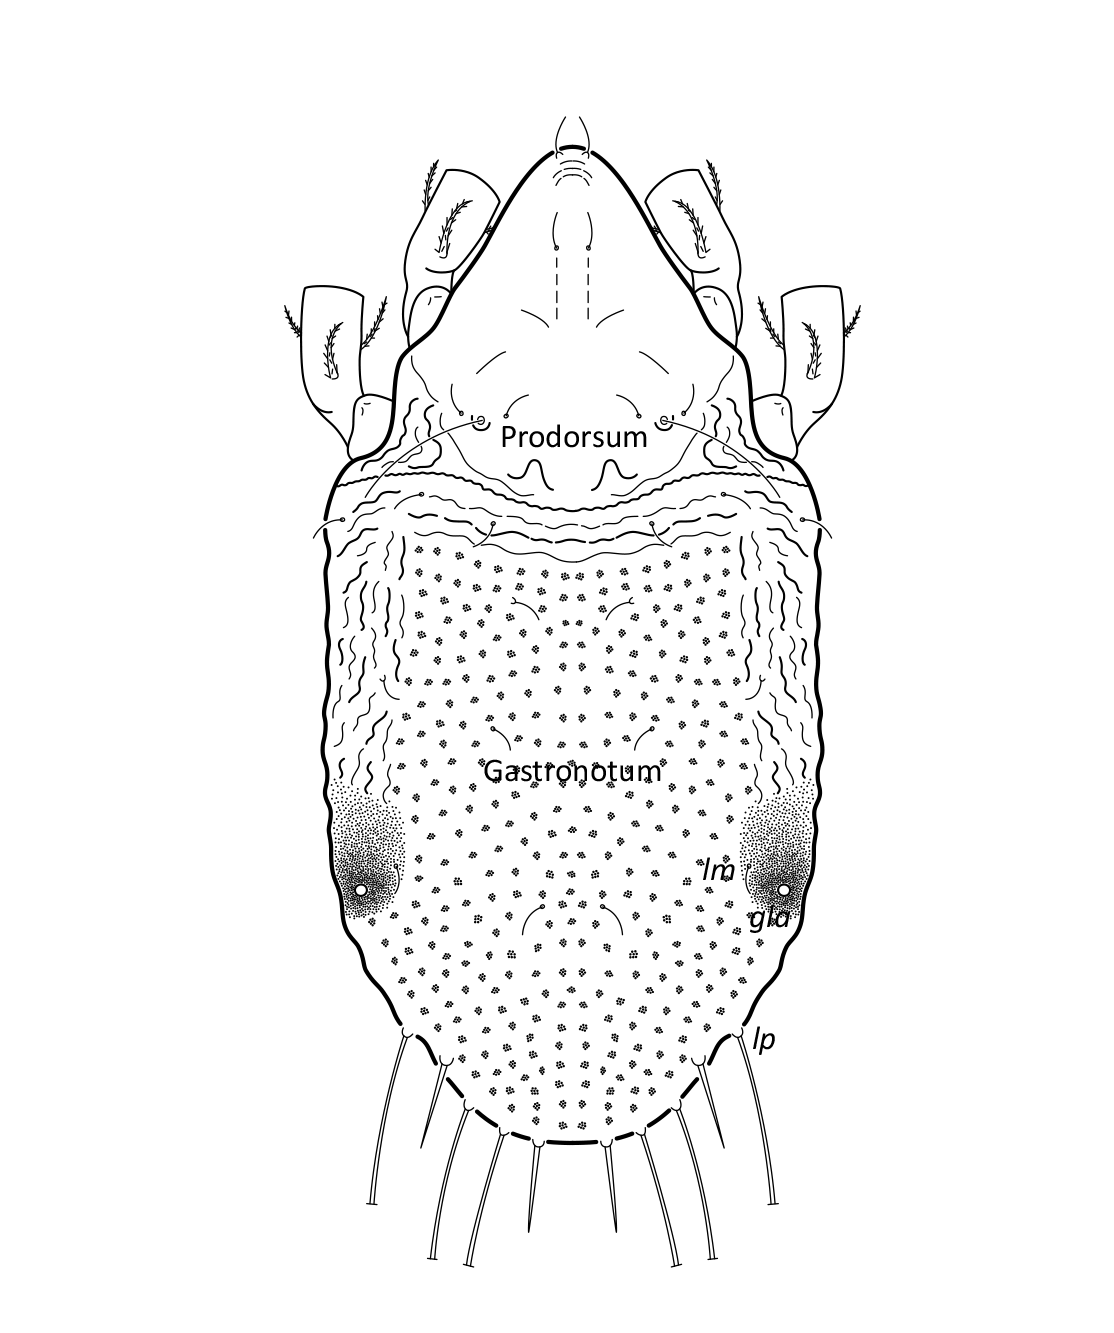 : Hydrozetes lacustris.